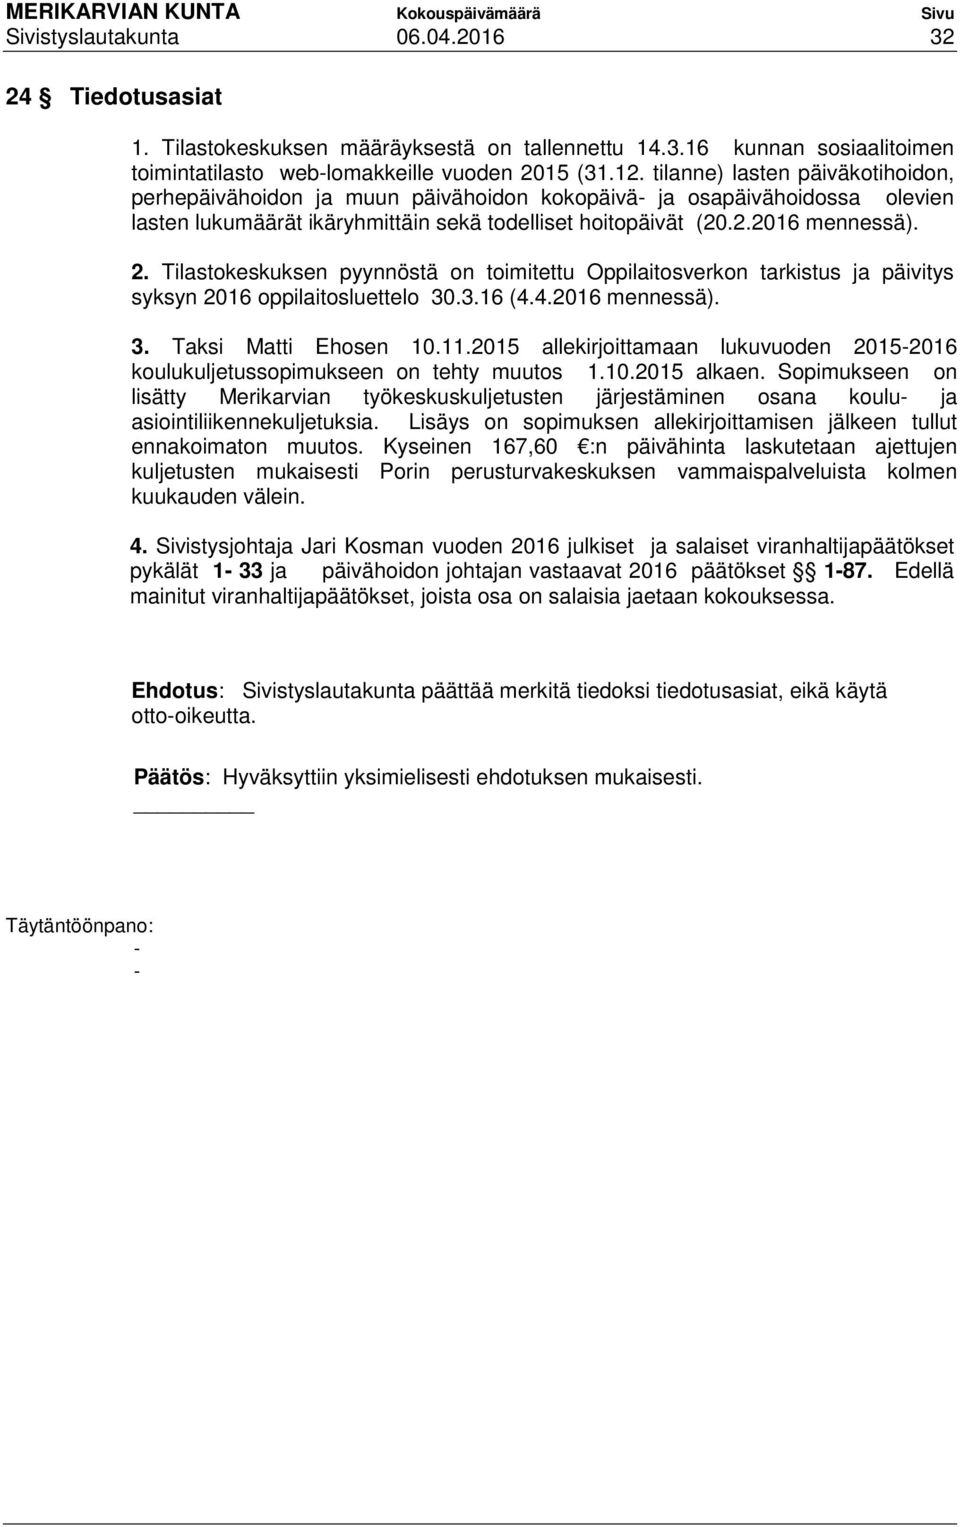 Tilastokeskuksen pyynnöstä on toimitettu Oppilaitosverkon tarkistus ja päivitys syksyn 2016 oppilaitosluettelo 30.3.16 (4.4.2016 mennessä). 3. Taksi Matti Ehosen 10.11.